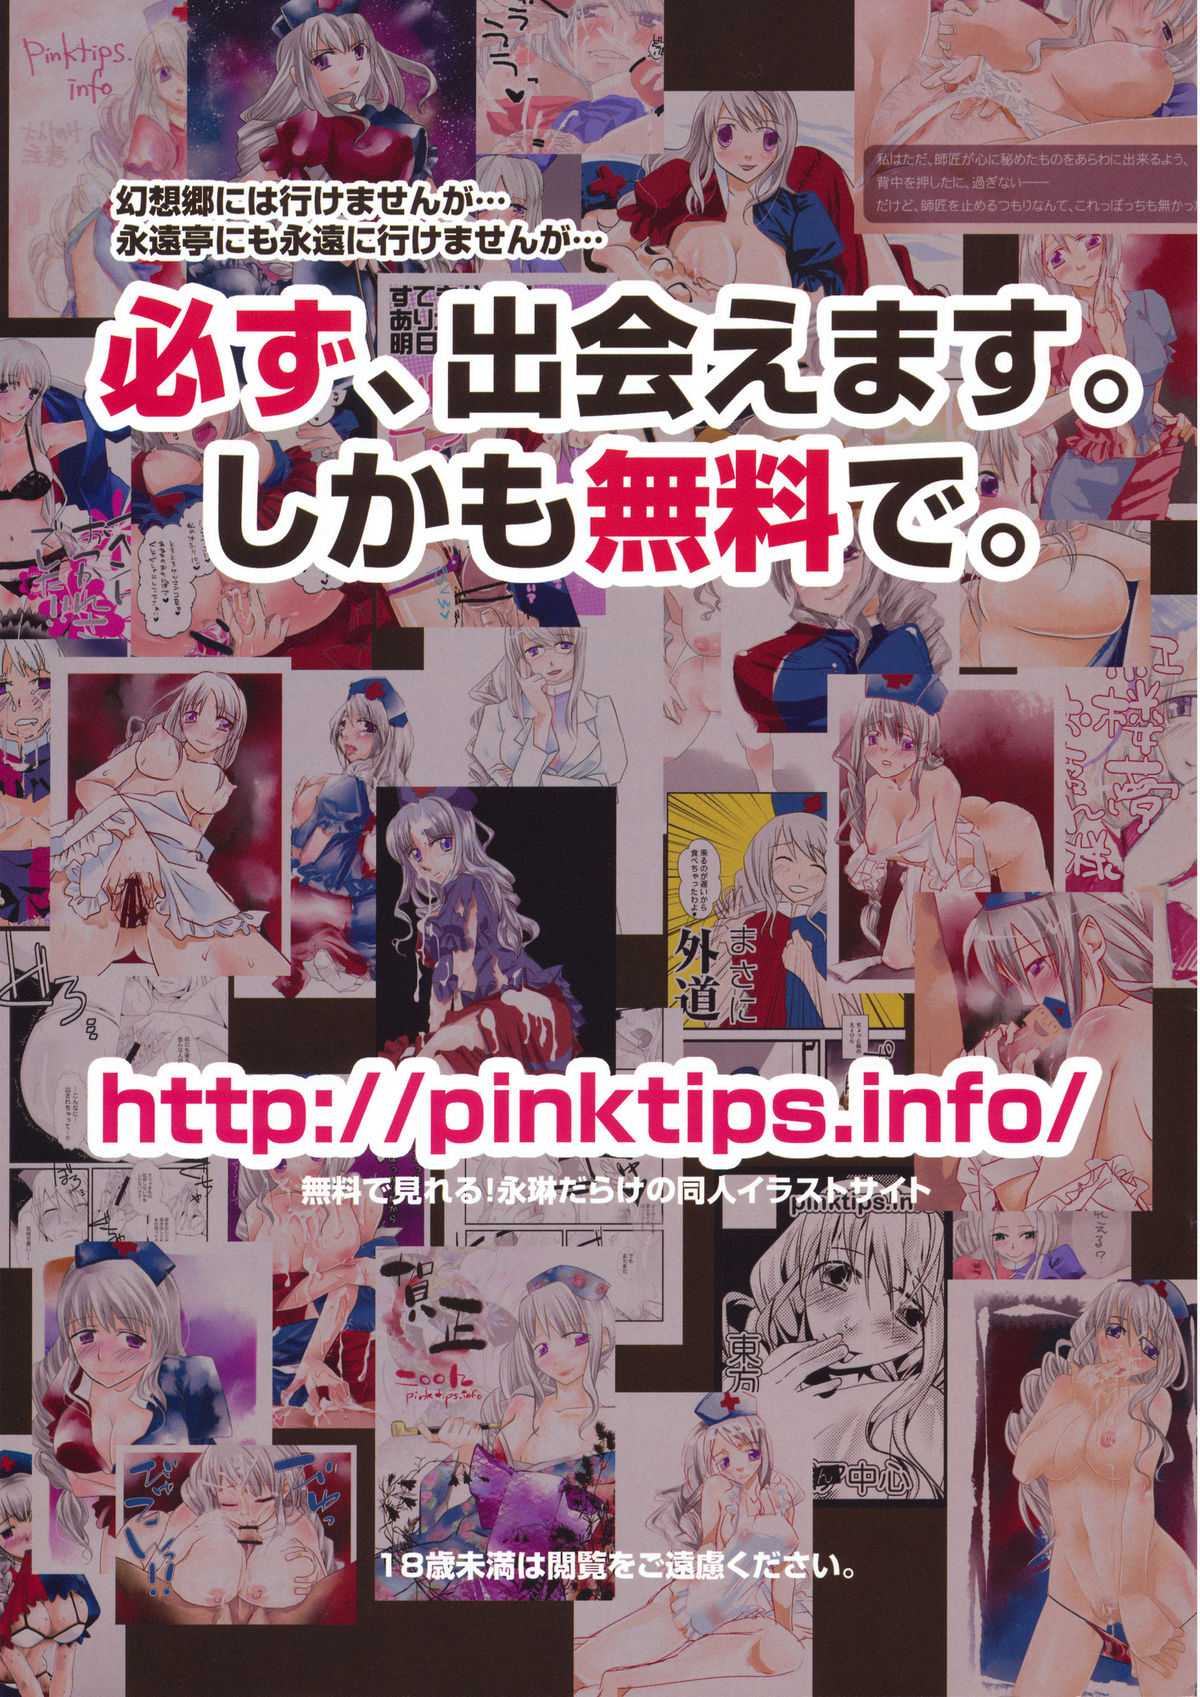 [pinktips.info] カラフル☆えーりん!! (東方) (COMIC1☆3) (同人誌) [pinktips.info] カラフル☆えーりん!! (東方) (エロ)